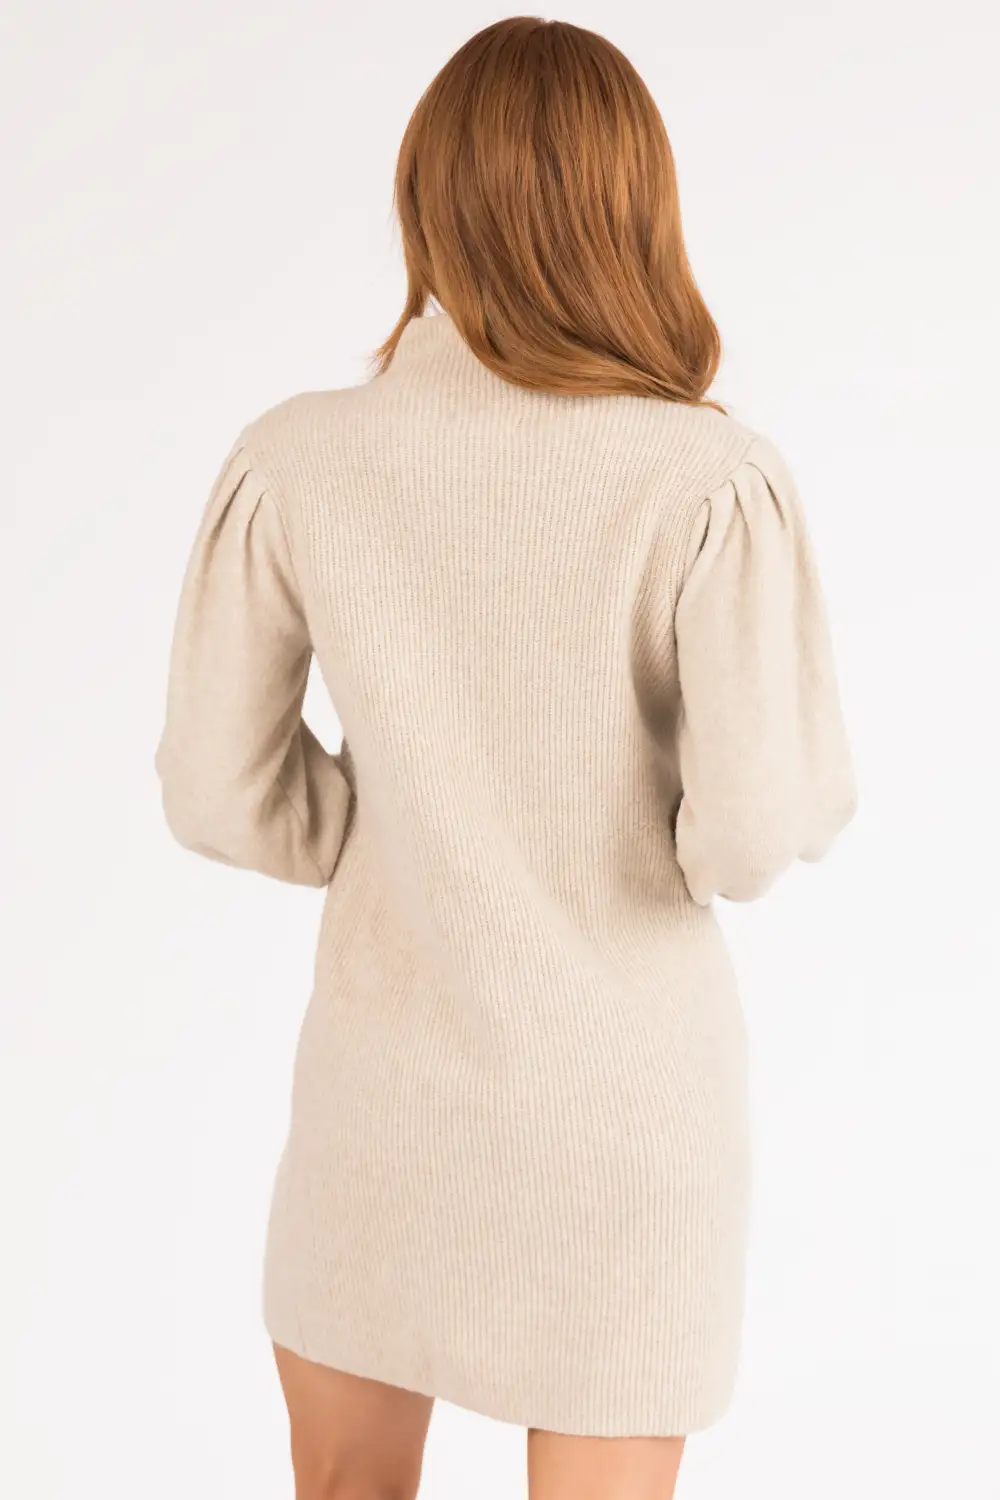 Beige Long Sleeve Mock Neck Knit Sweater Dress